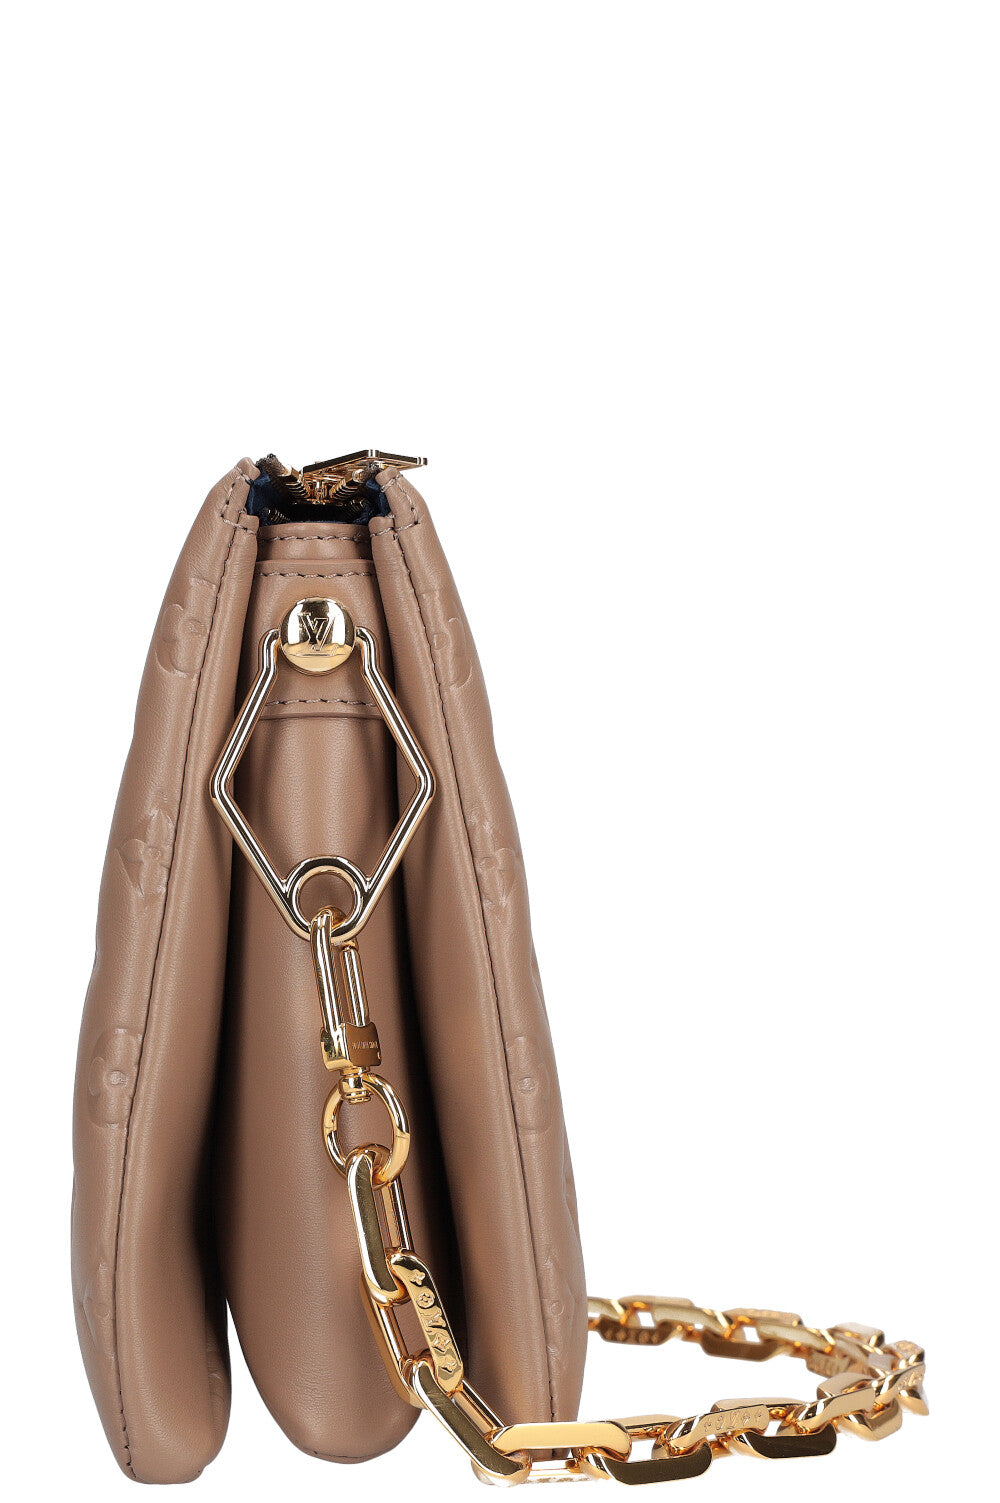 Louis Vuitton imagine le sac Coussin